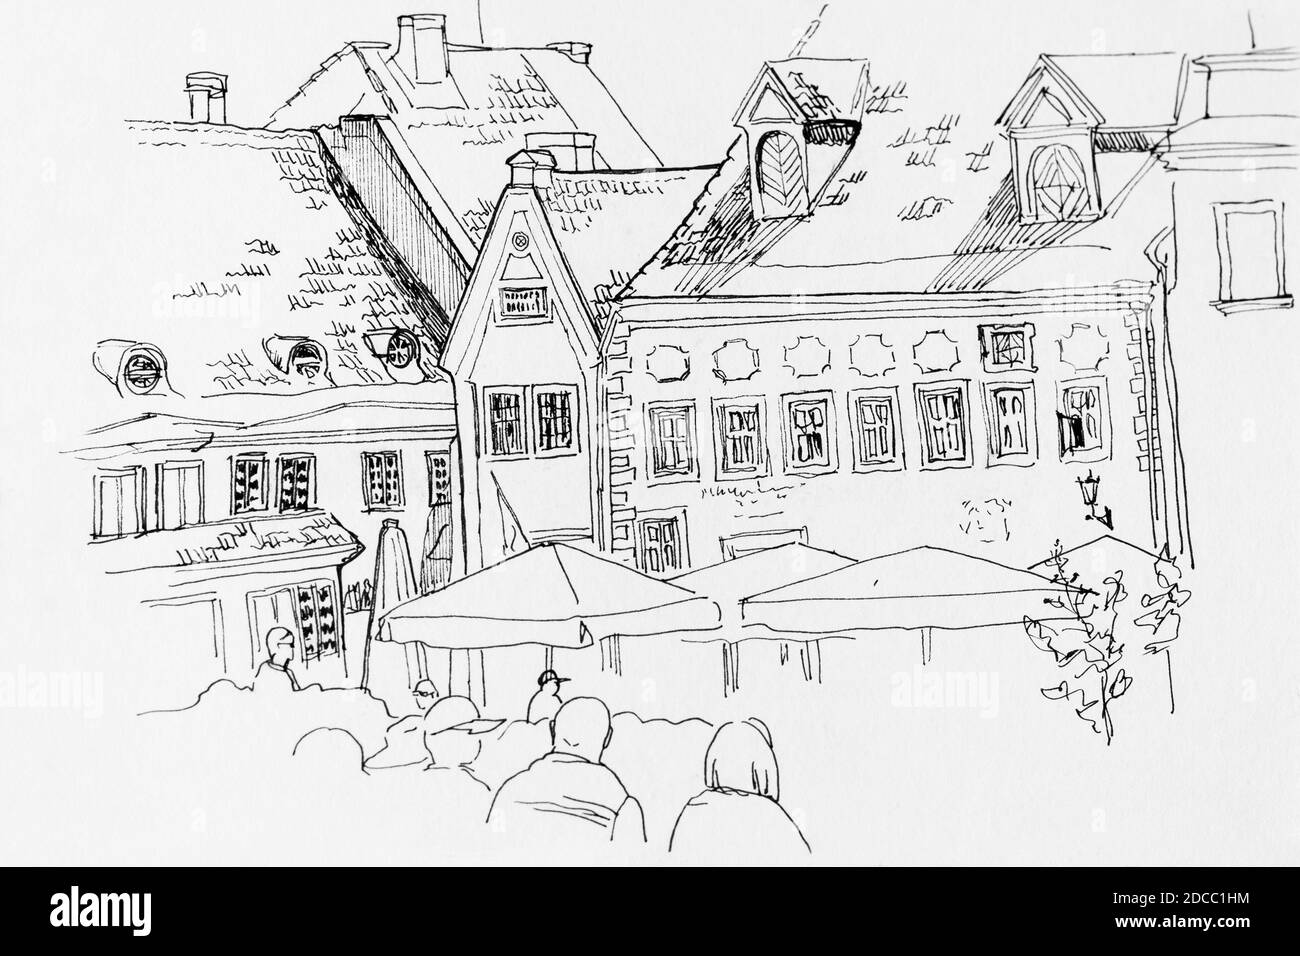 Raekoja plats Tallinn Town Hall Square in a street fest line art hand drawing Stock Photo